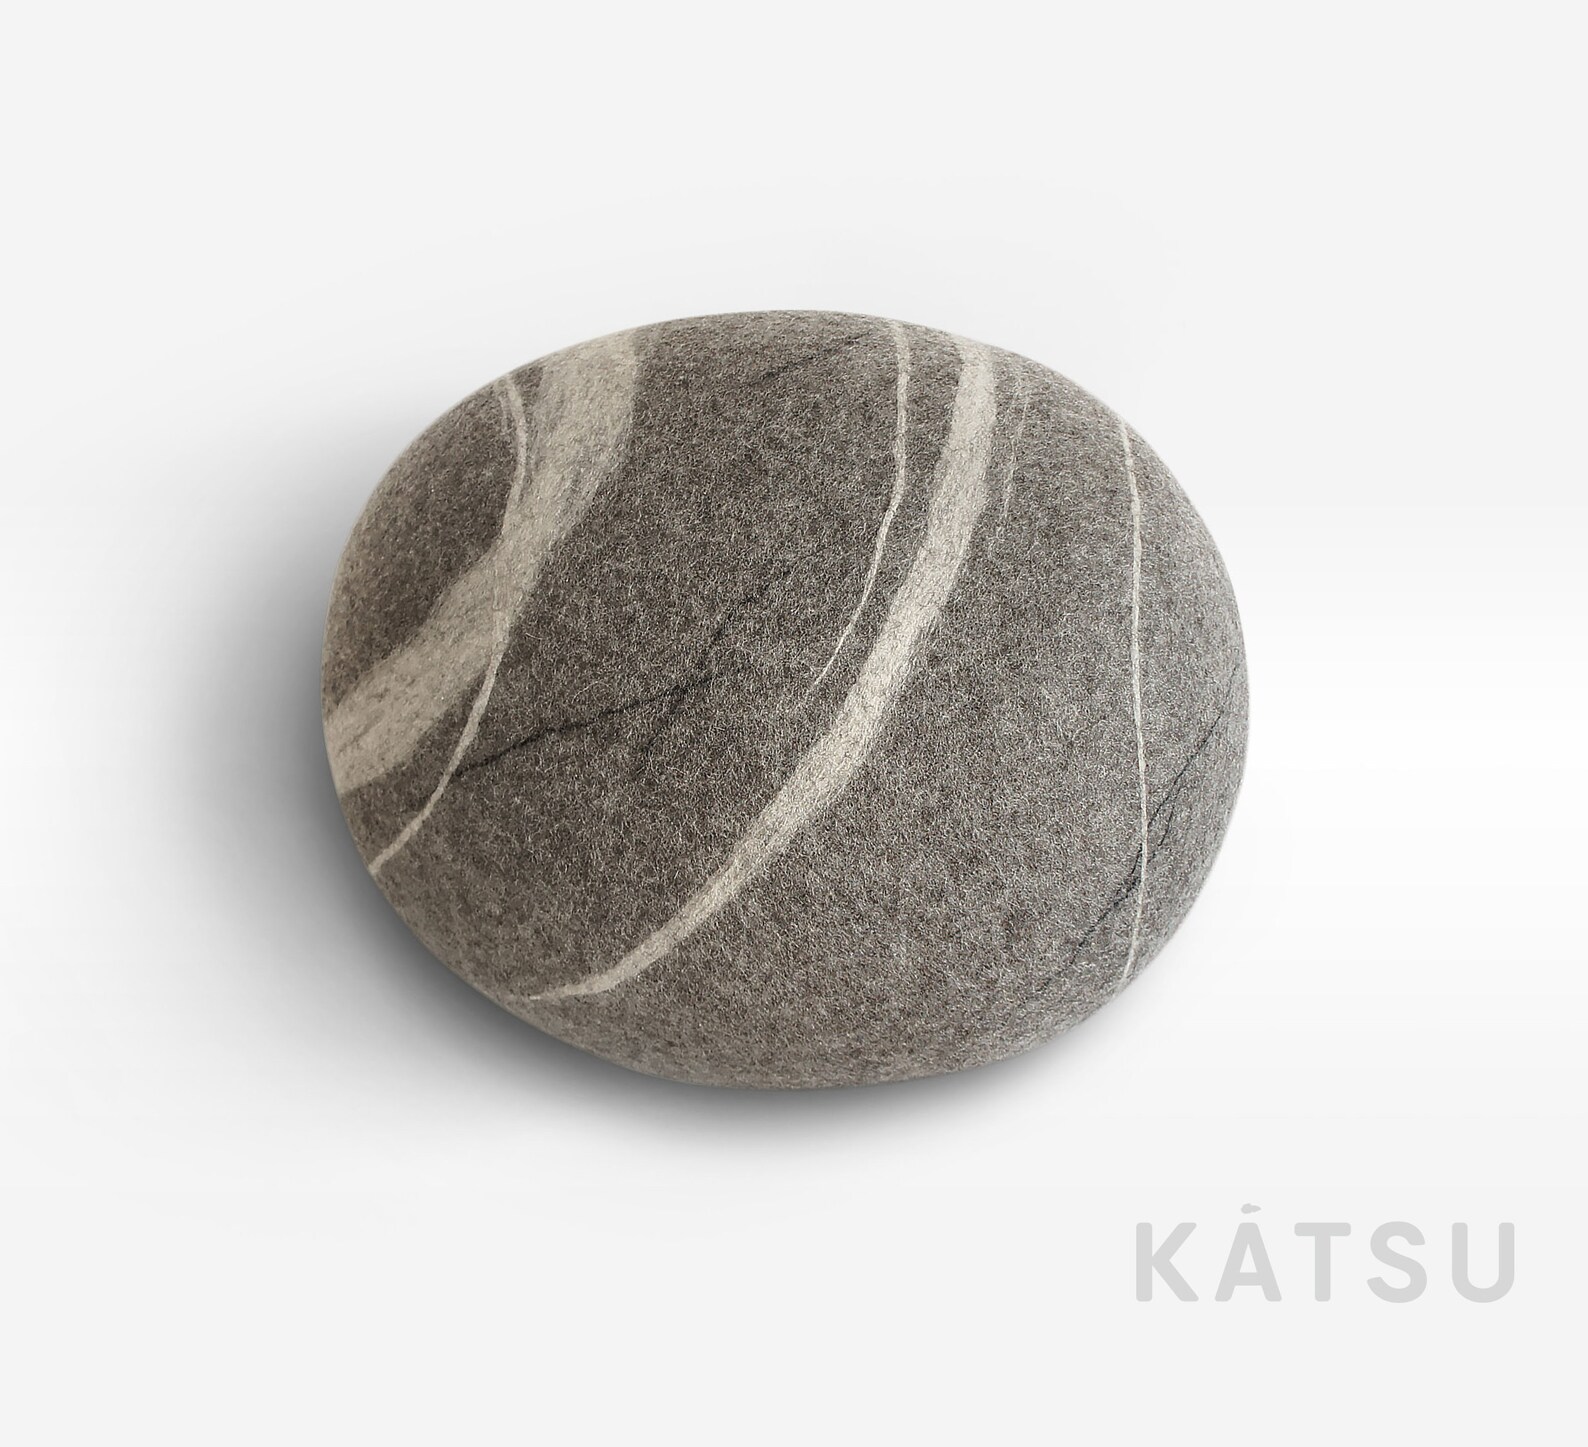 Felt stone. Katsu камни пуфы. Валяный камень пуф. Мягкий камень. Пуфик войлочный.